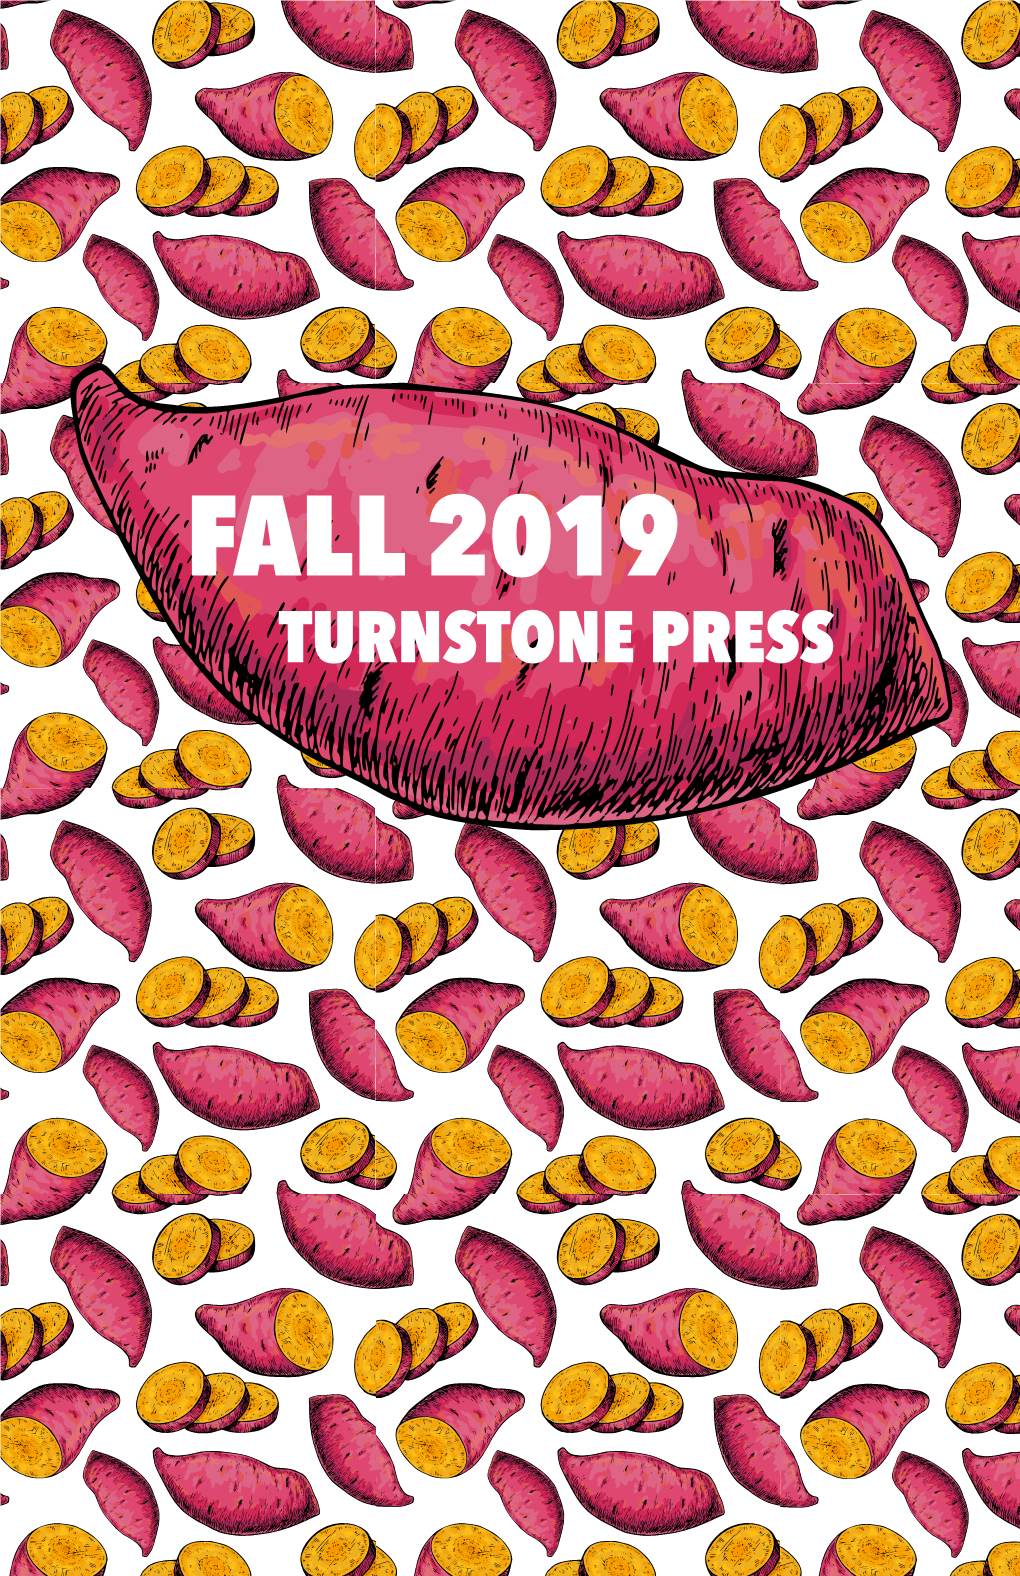 Turnstone Press